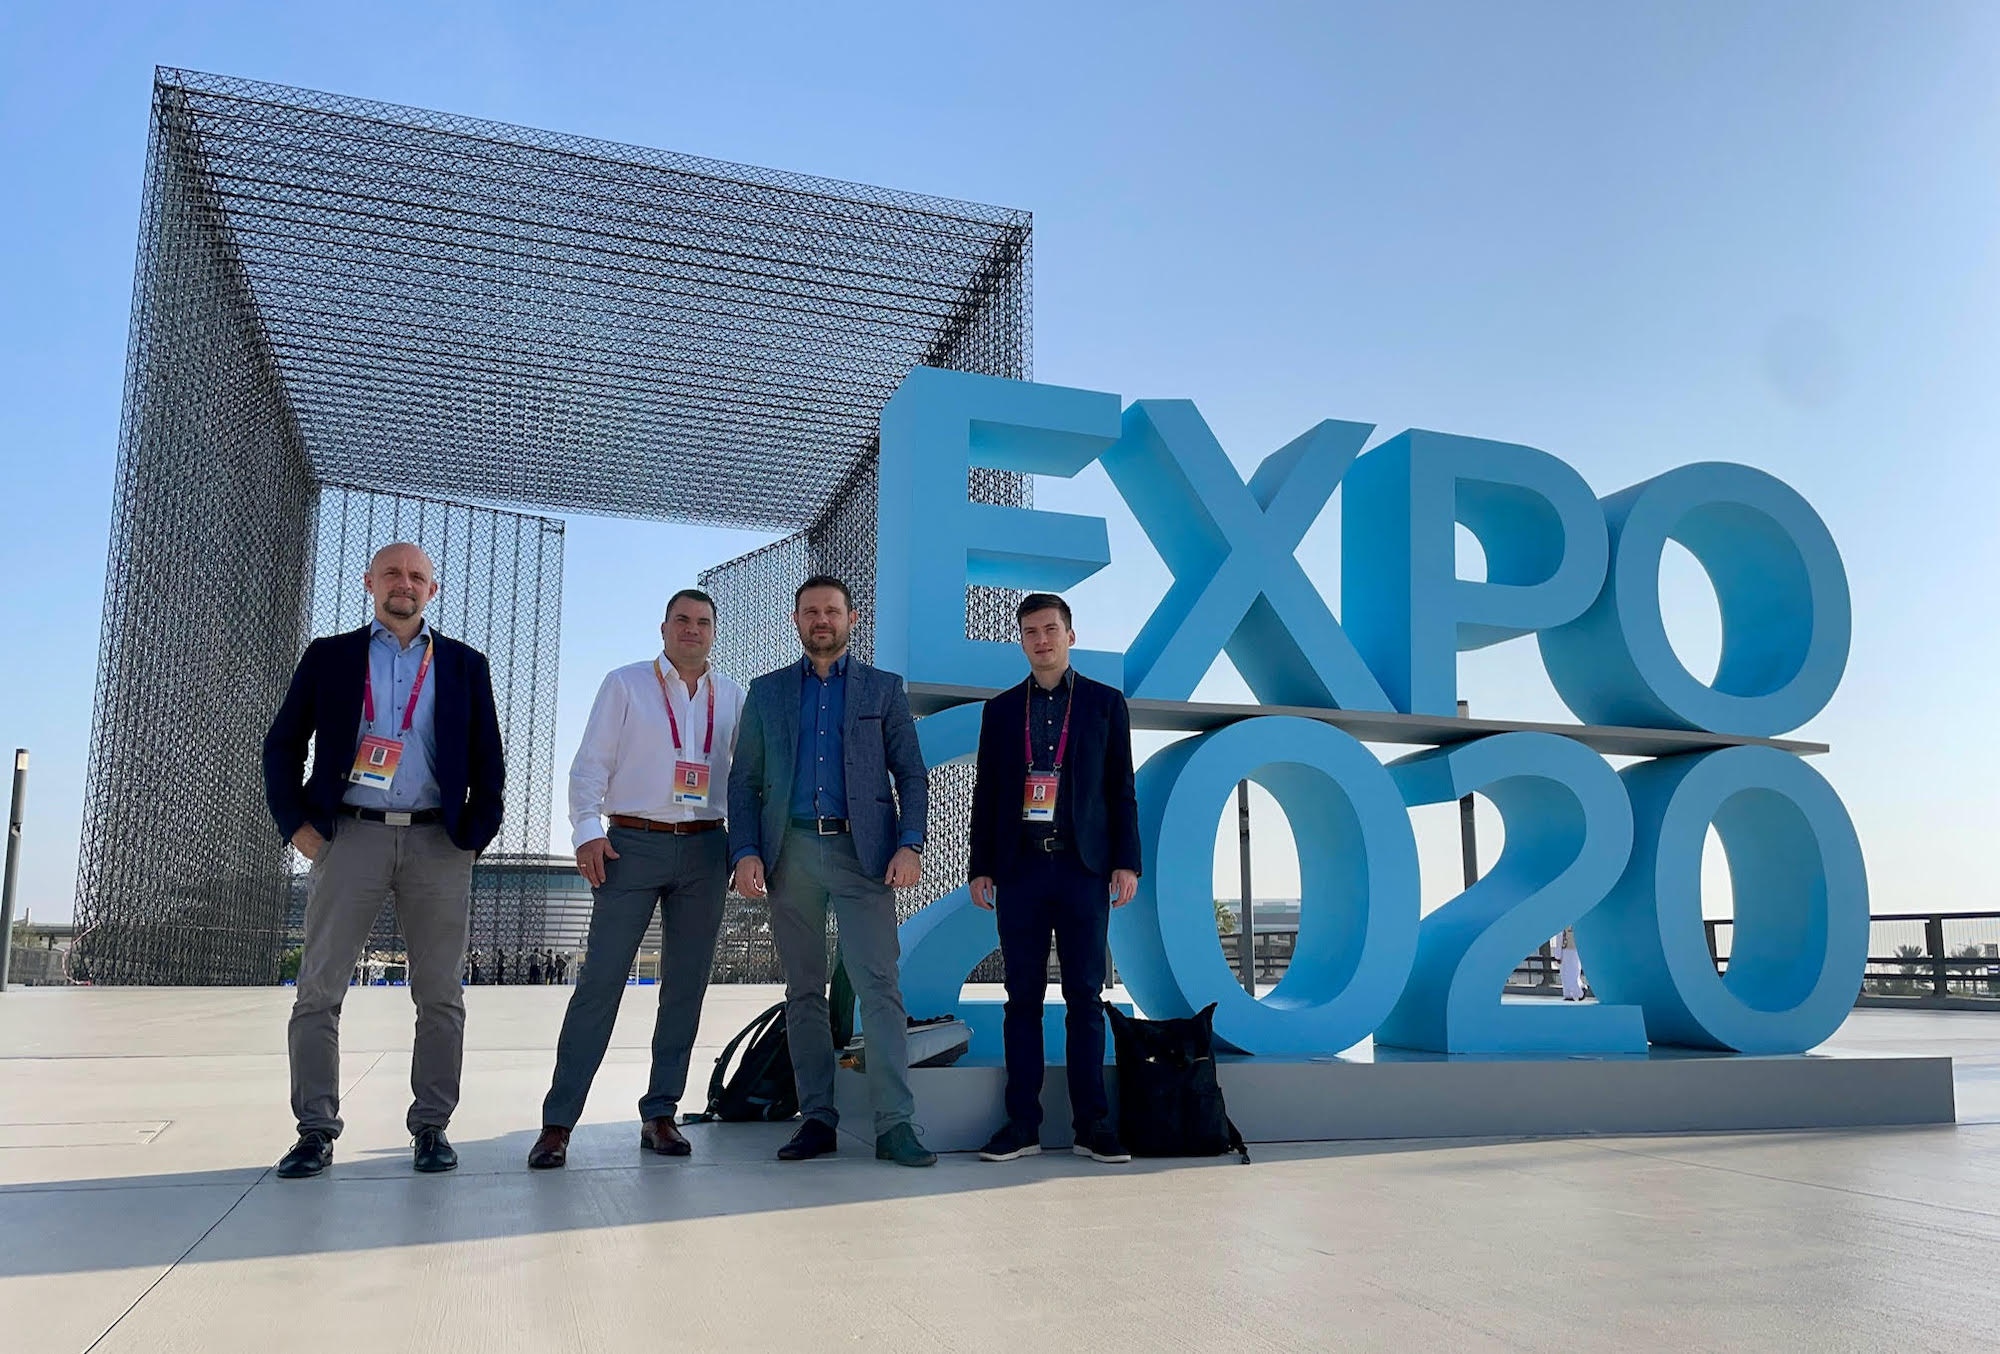 A Chameleon csapata az Expo 2020 dubaji kiállításon